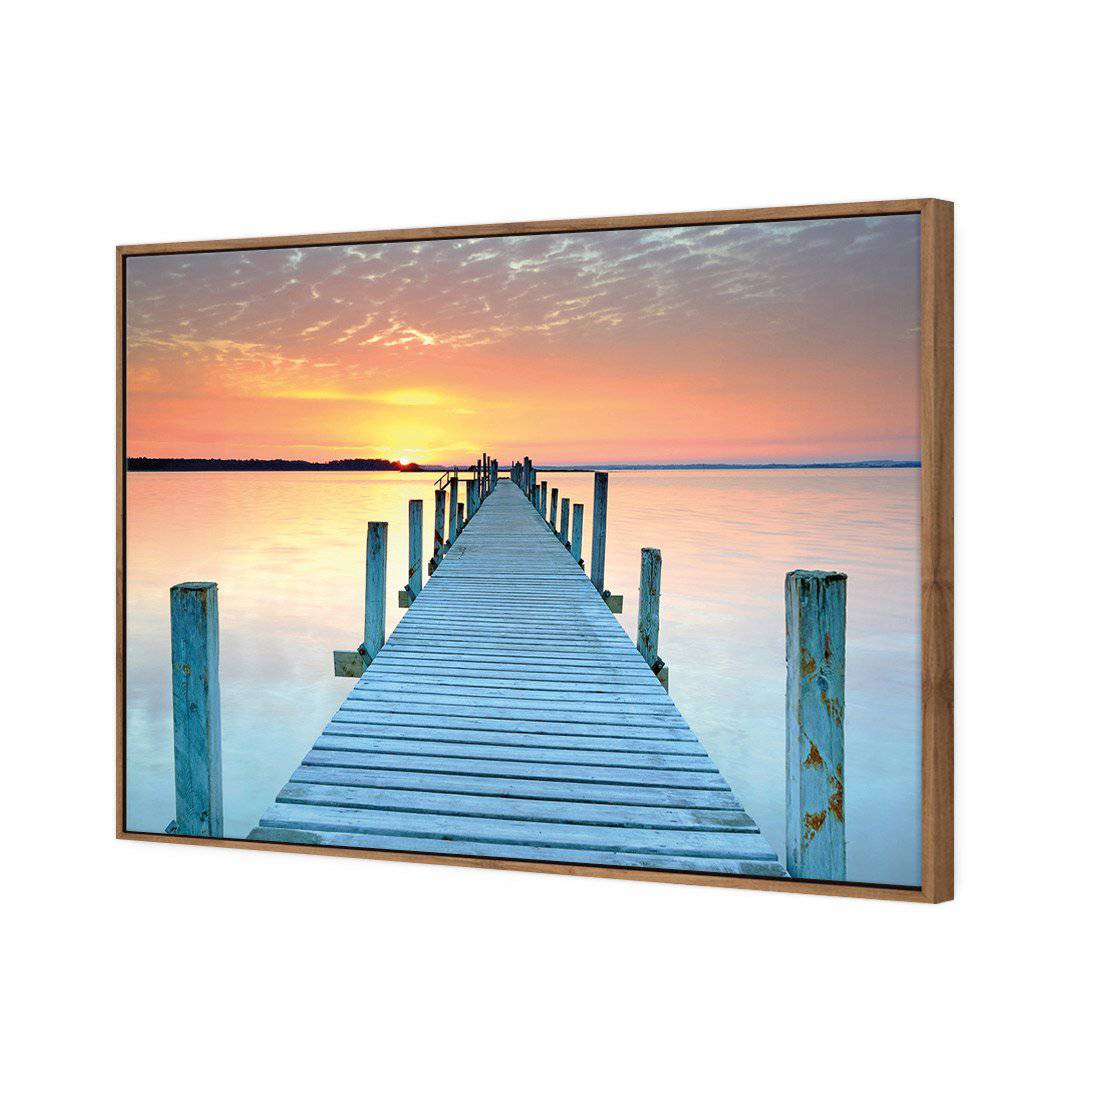 Sunset Pier Canvas Art-Canvas-Wall Art Designs-45x30cm-Canvas - Natural Frame-Wall Art Designs